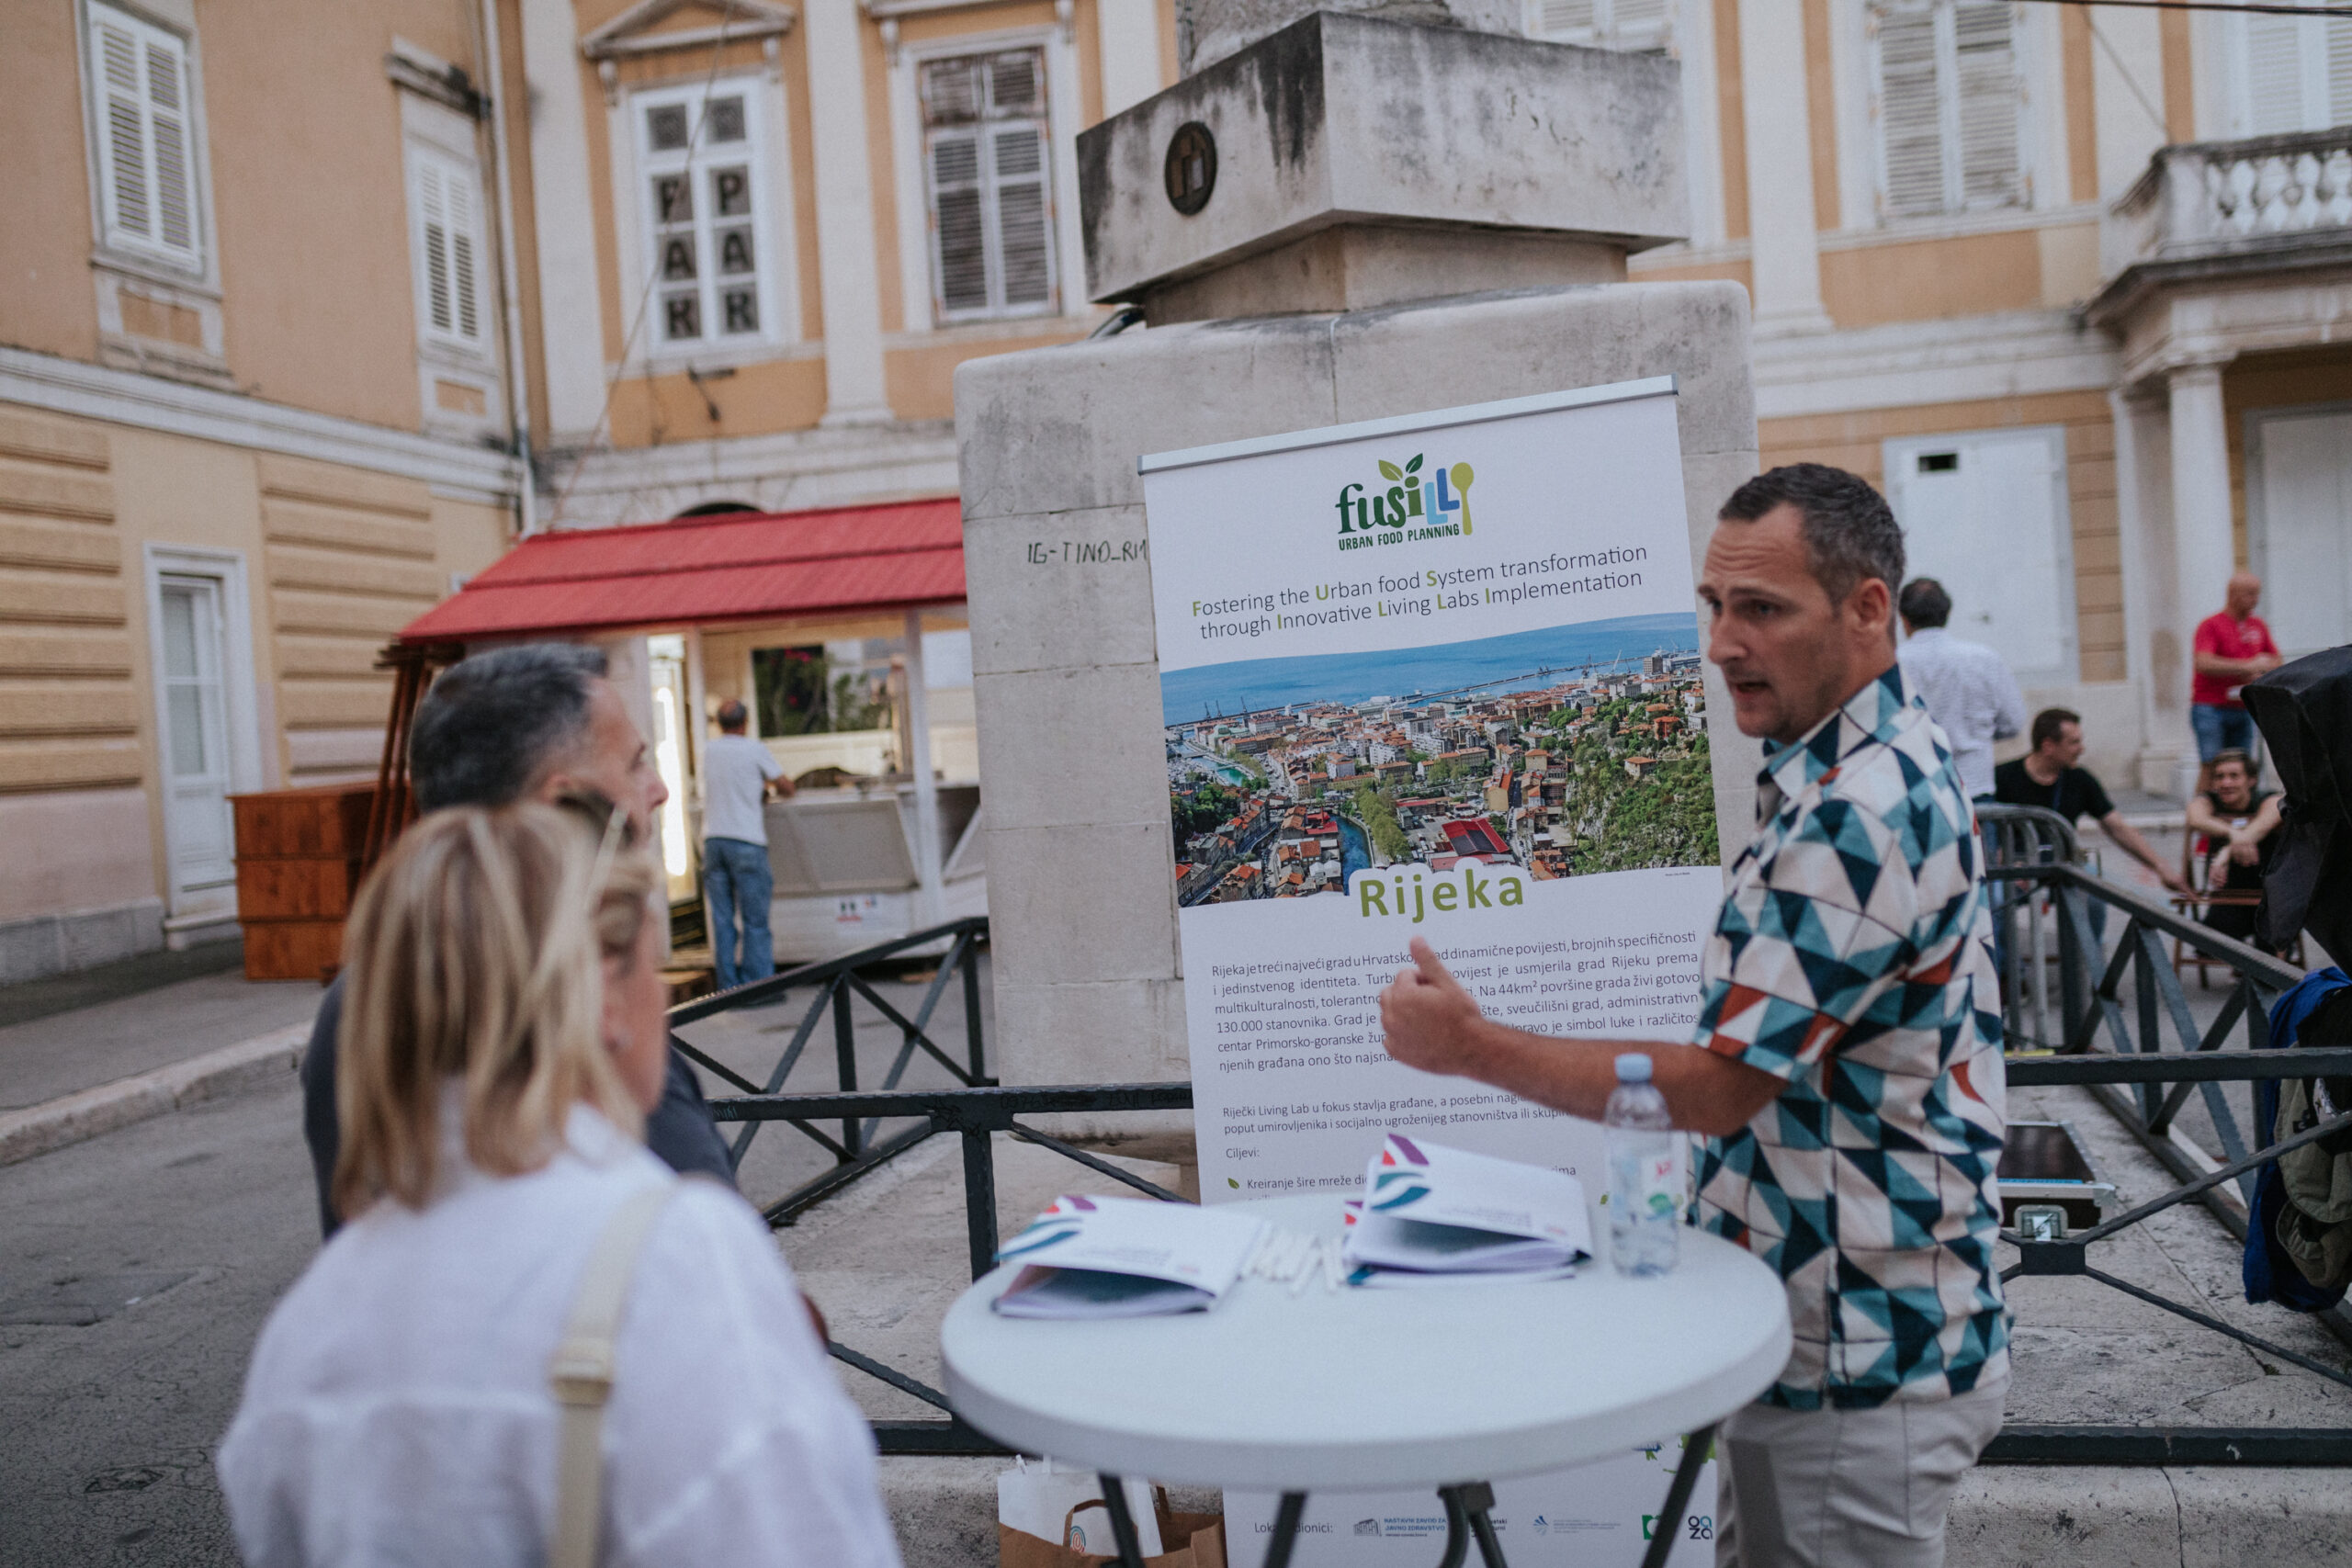 Visitors of the Porto Etno Festival filling out the FUSILLI survey